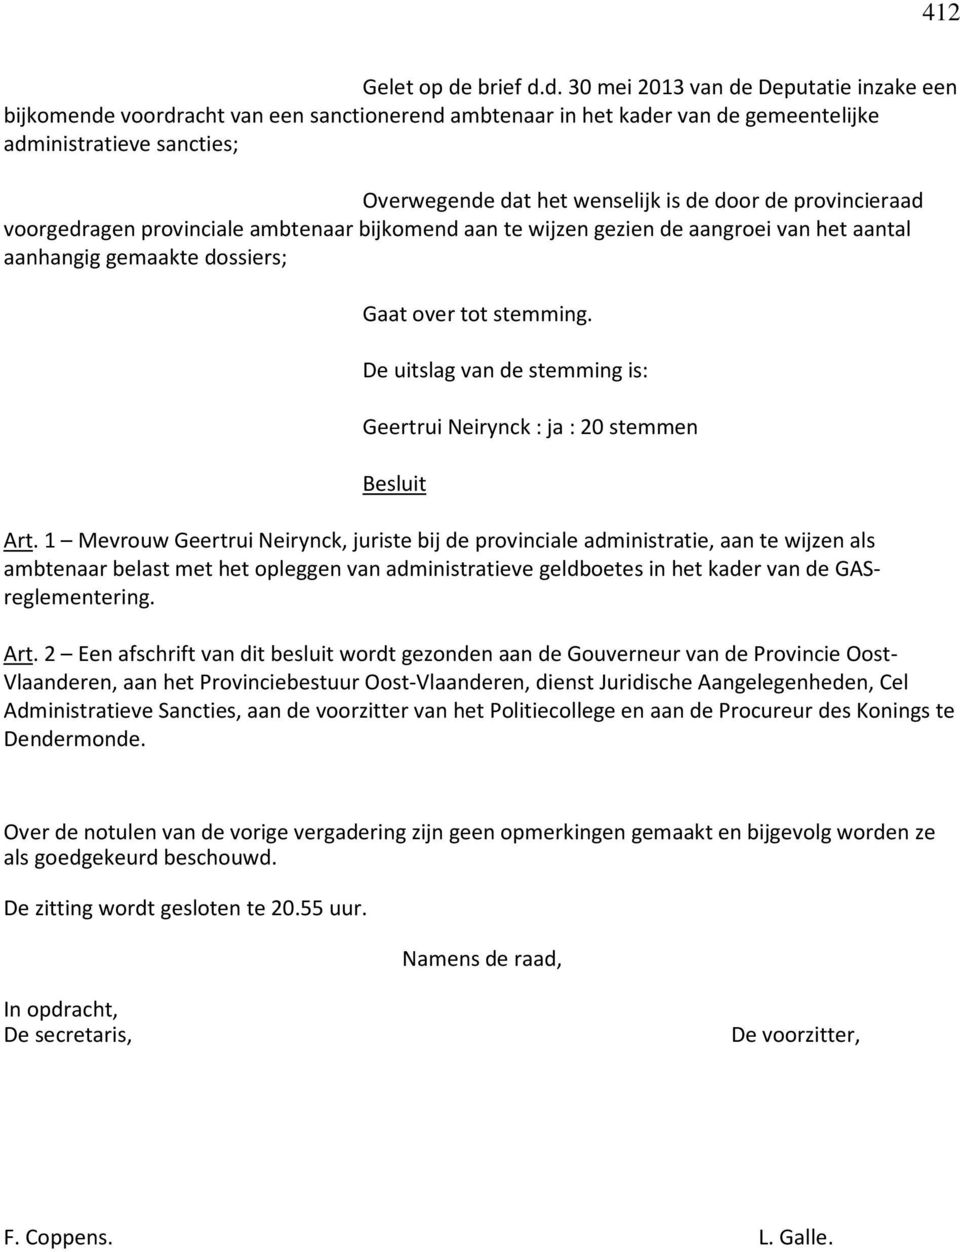 d. 30 mei 2013 van de Deputatie inzake een bijkomende voordracht van een sanctionerend ambtenaar in het kader van de gemeentelijke administratieve sancties; Overwegende dat het wenselijk is de door